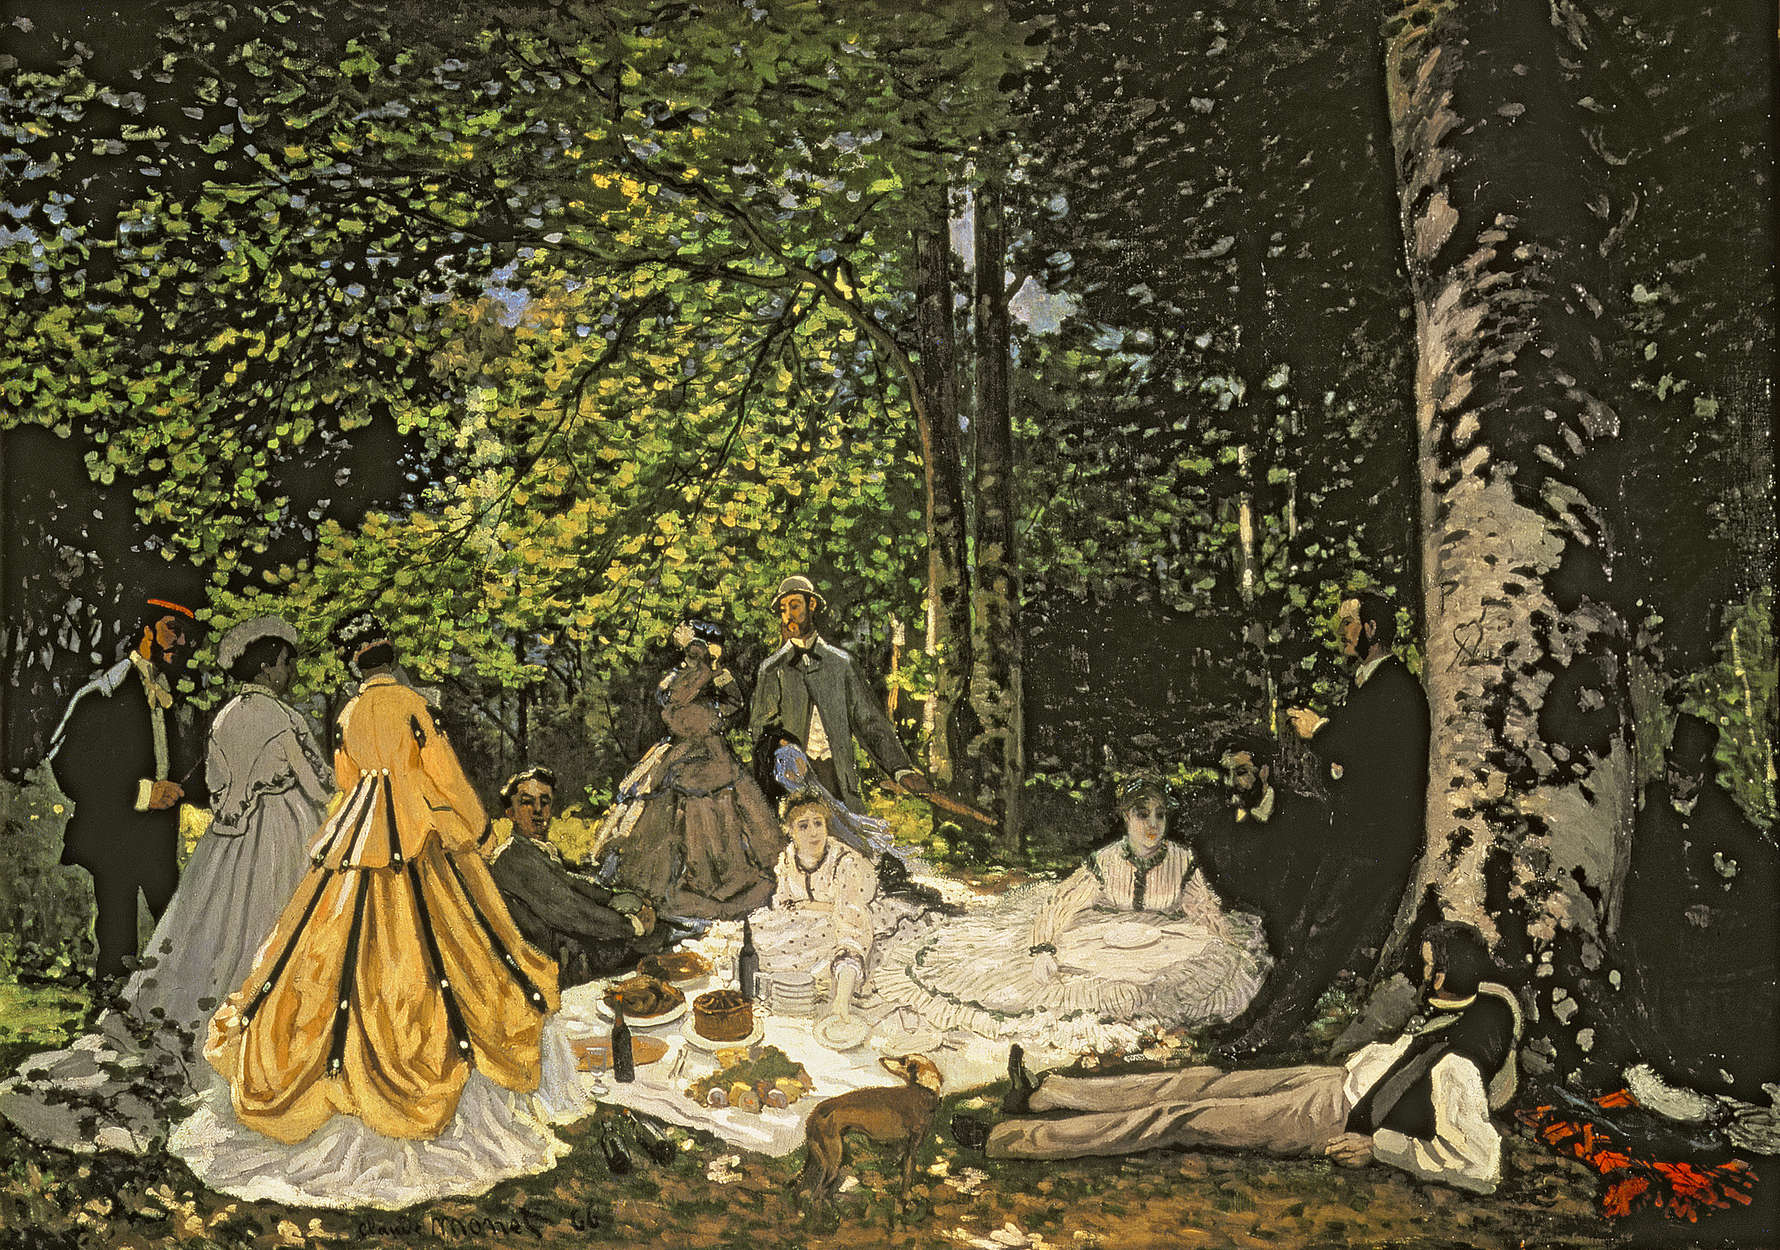             Fotomurali "Colazione nel verde" di Claude Monet
        